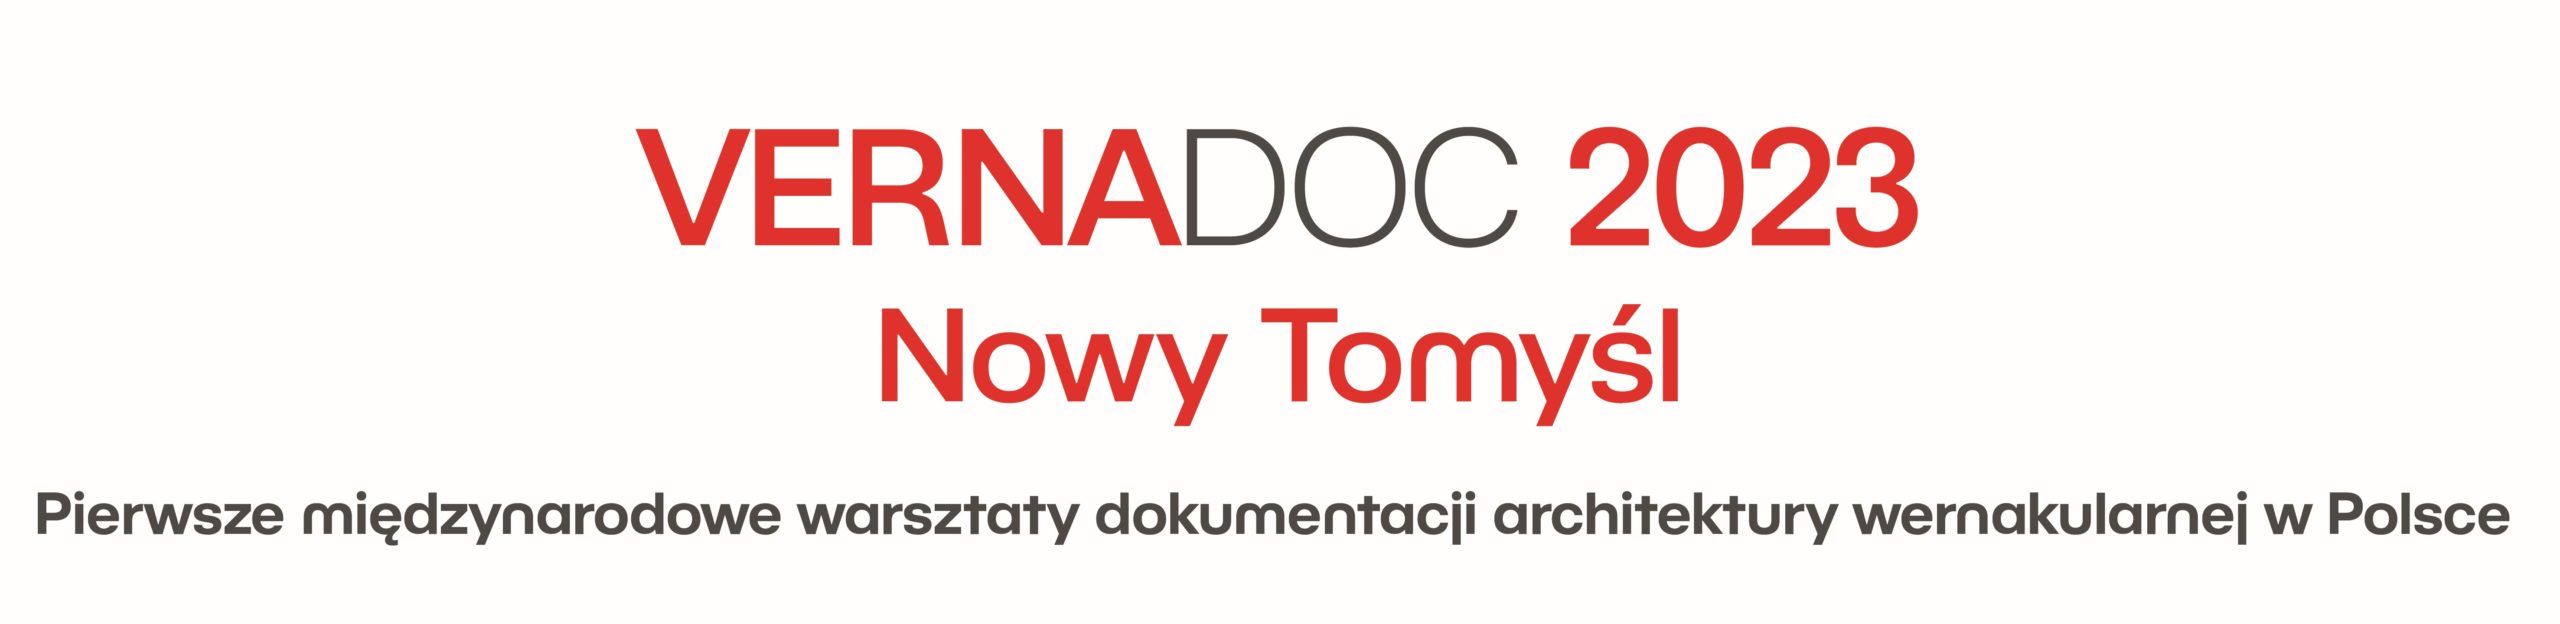 Międzynarodowe warsztaty dokumentacji architektury wernakularnej VERNADOC po raz pierwszy w Polsce